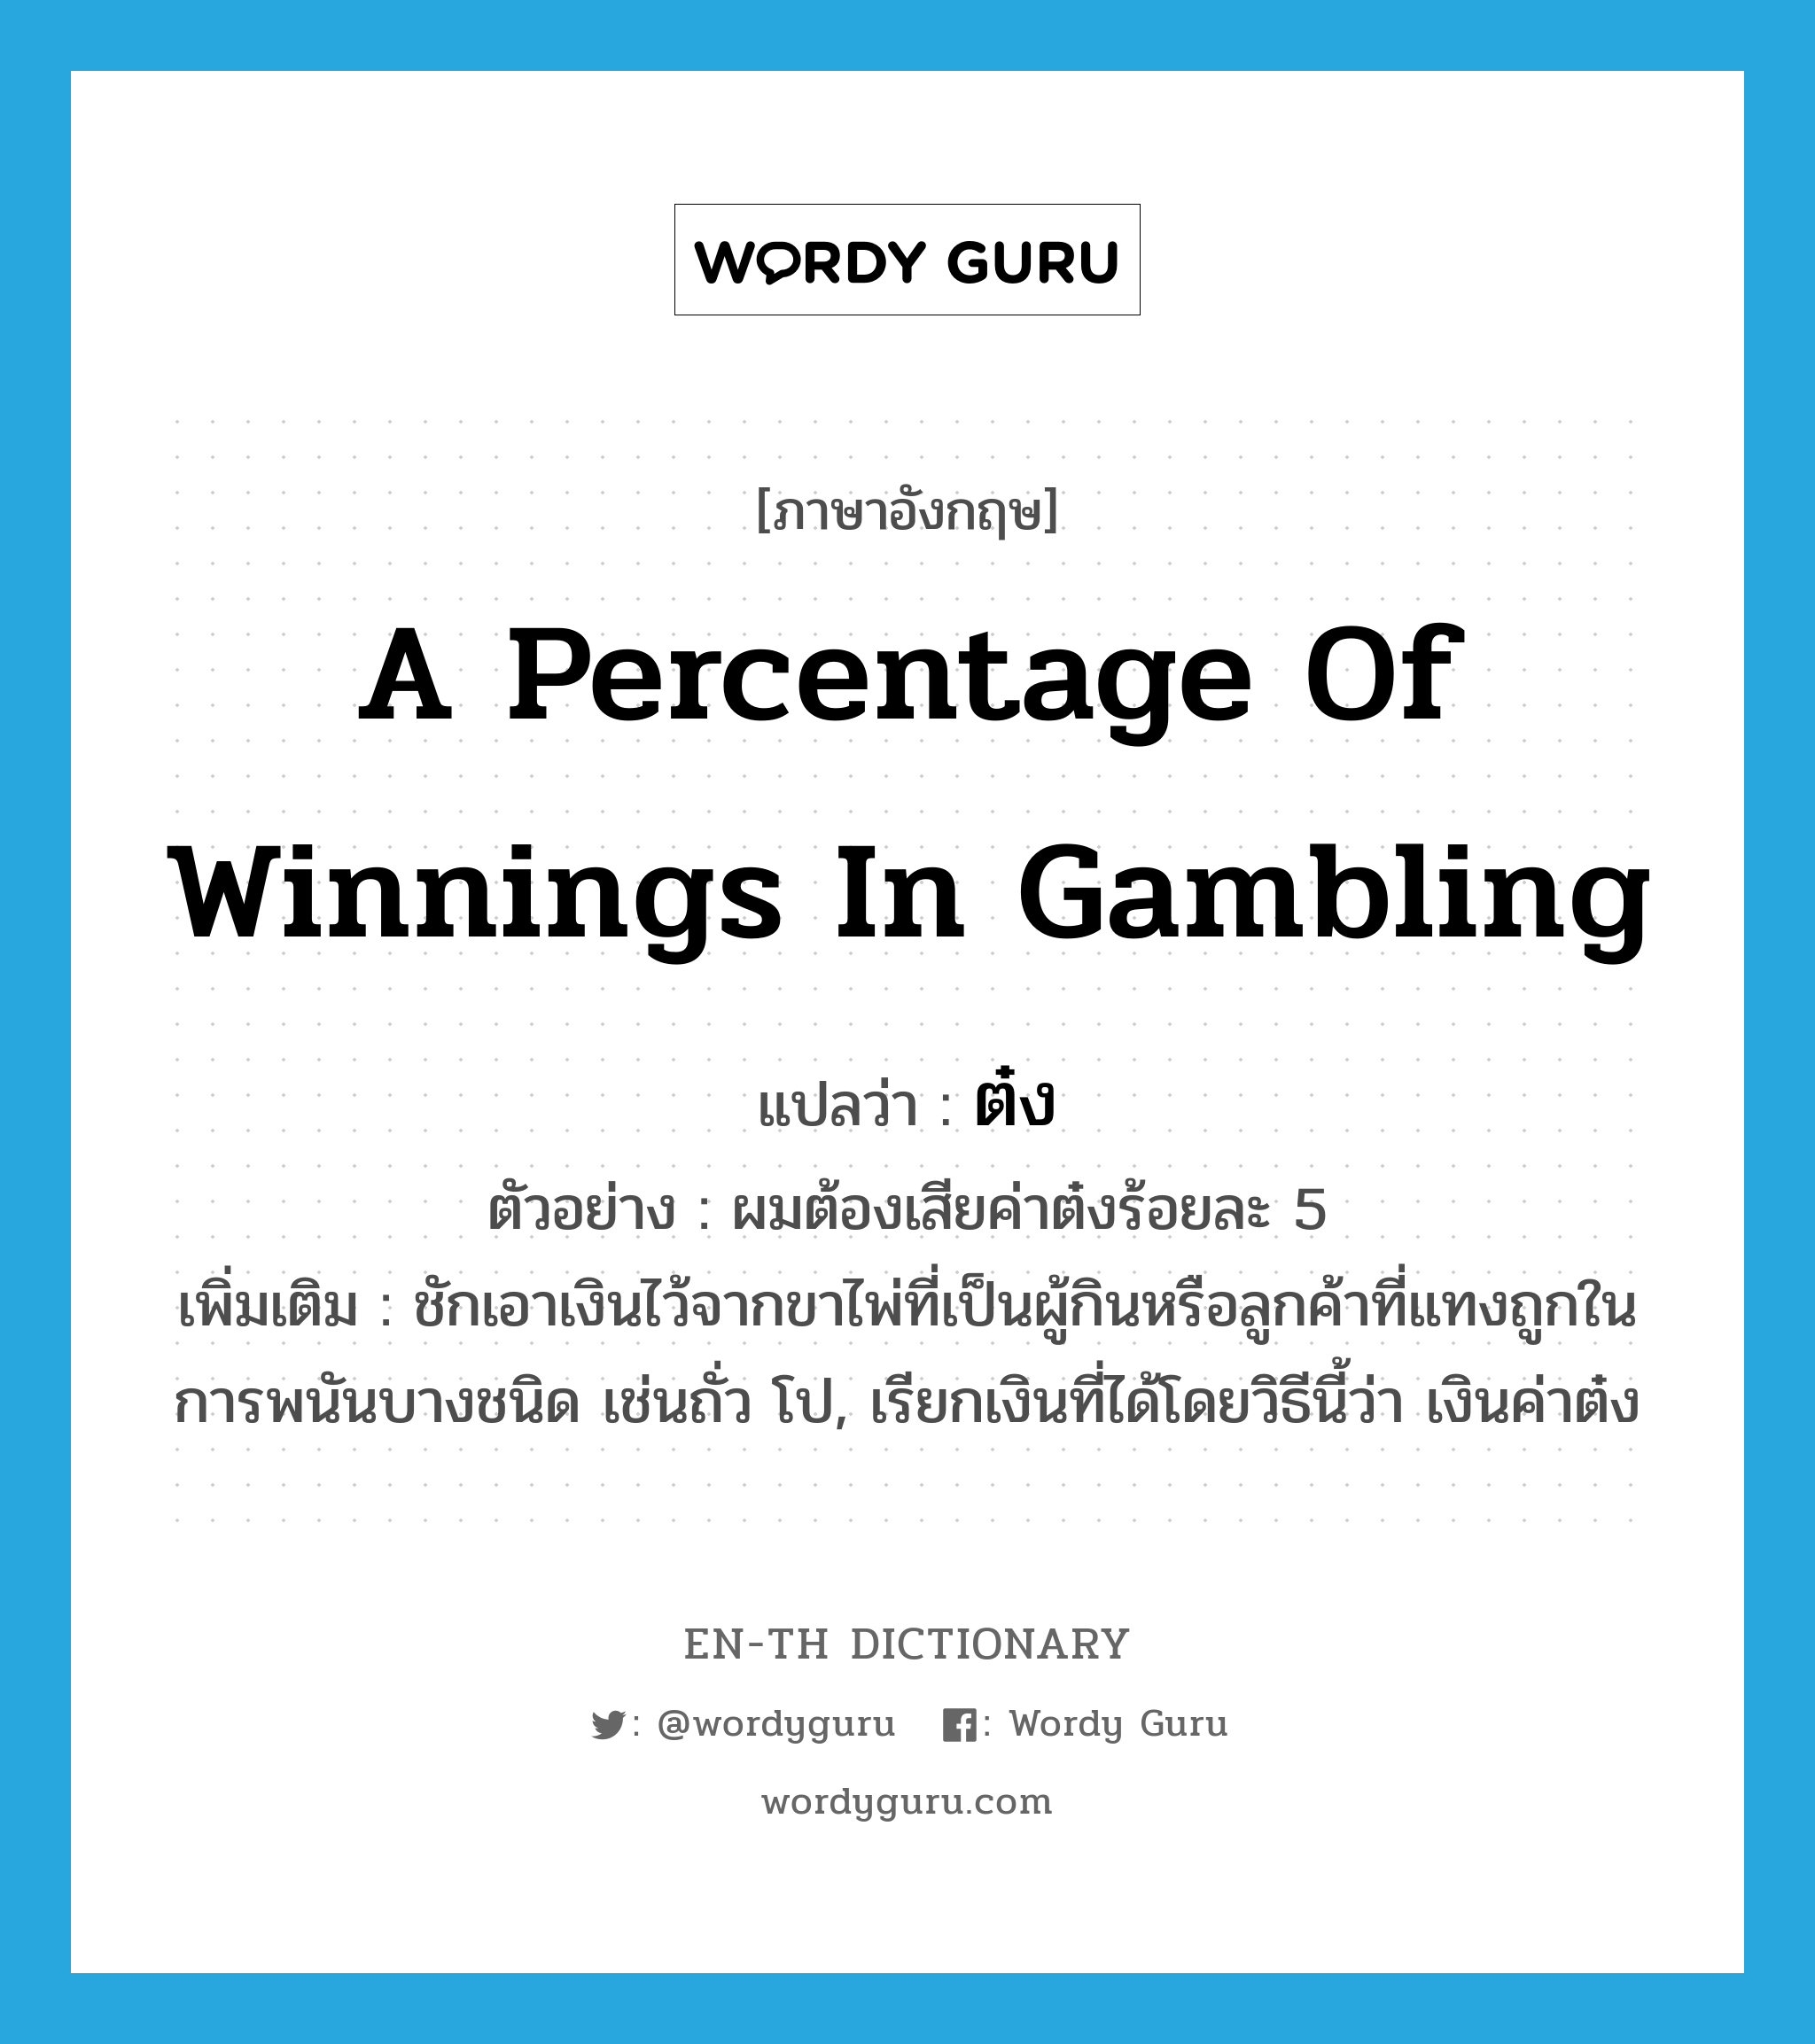 a percentage of winnings in gambling แปลว่า?, คำศัพท์ภาษาอังกฤษ a percentage of winnings in gambling แปลว่า ต๋ง ประเภท N ตัวอย่าง ผมต้องเสียค่าต๋งร้อยละ 5 เพิ่มเติม ชักเอาเงินไว้จากขาไพ่ที่เป็นผู้กินหรือลูกค้าที่แทงถูกในการพนันบางชนิด เช่นถั่ว โป, เรียกเงินที่ได้โดยวิธีนี้ว่า เงินค่าต๋ง หมวด N